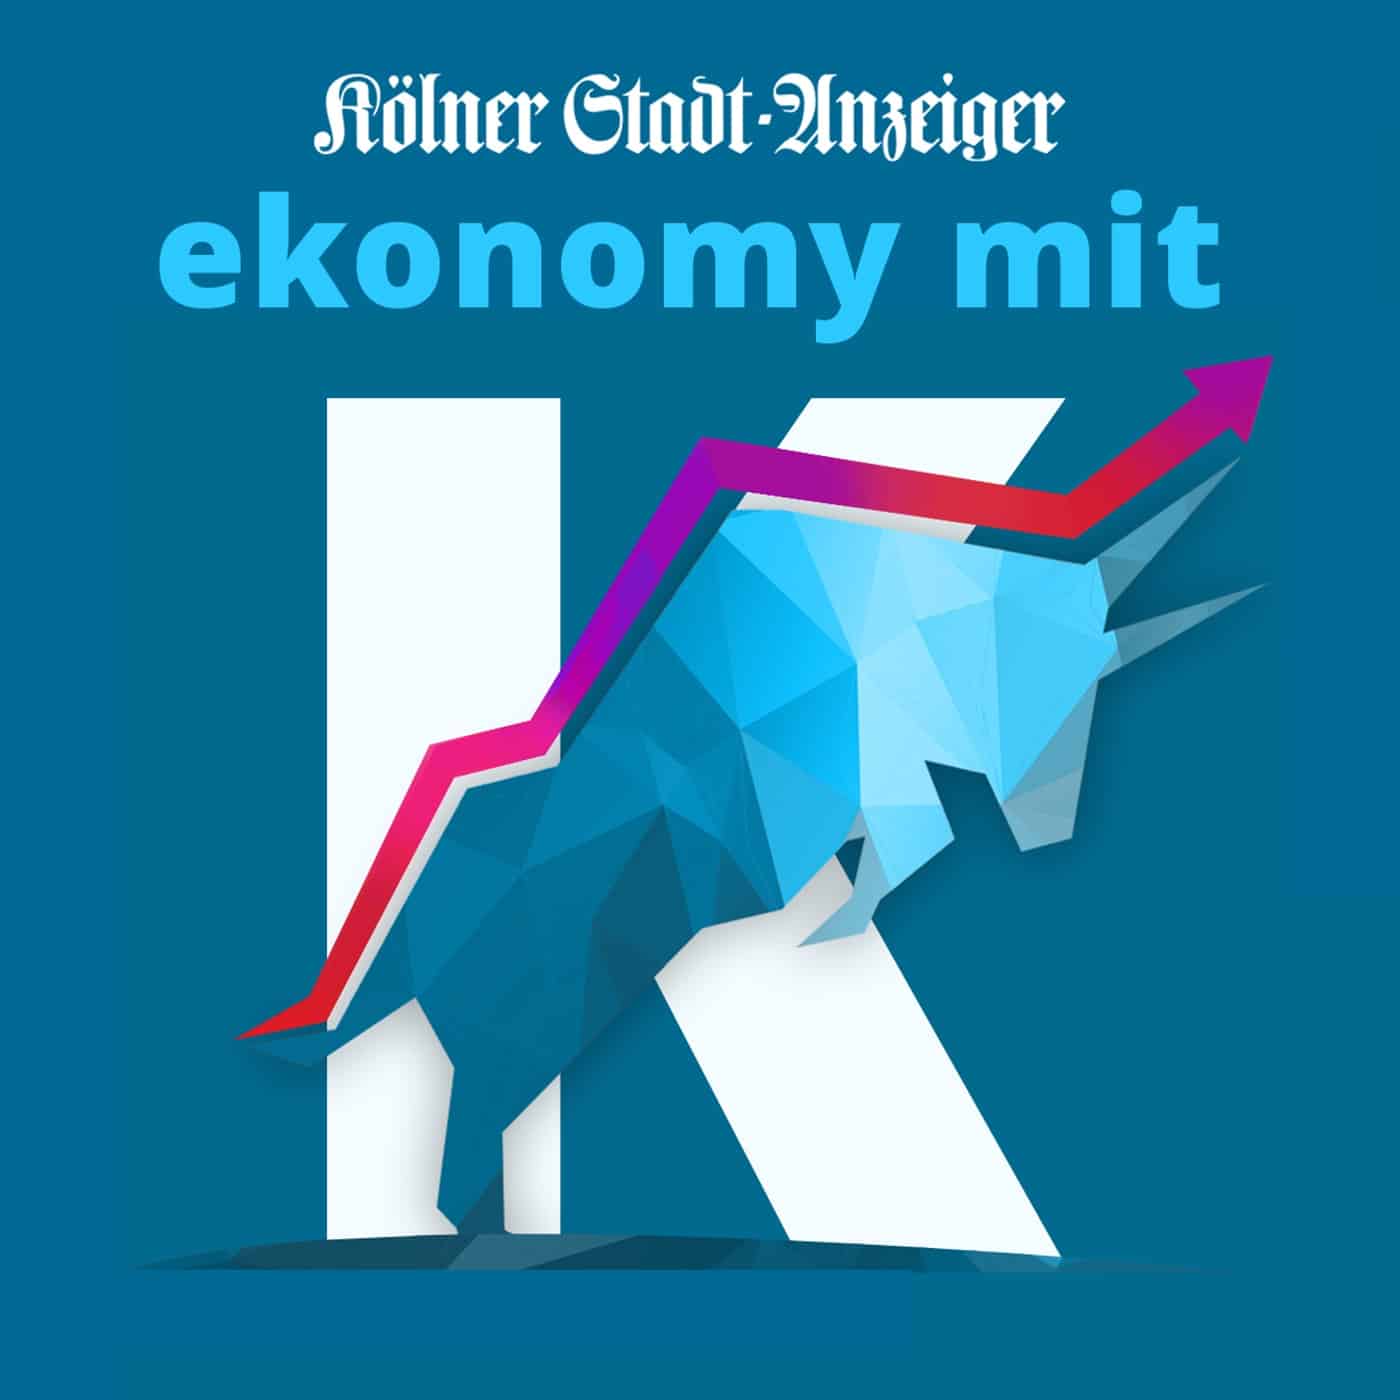 Logo des Podcasts ekonomy mit k des Kölner Stadt-Anzeiger.